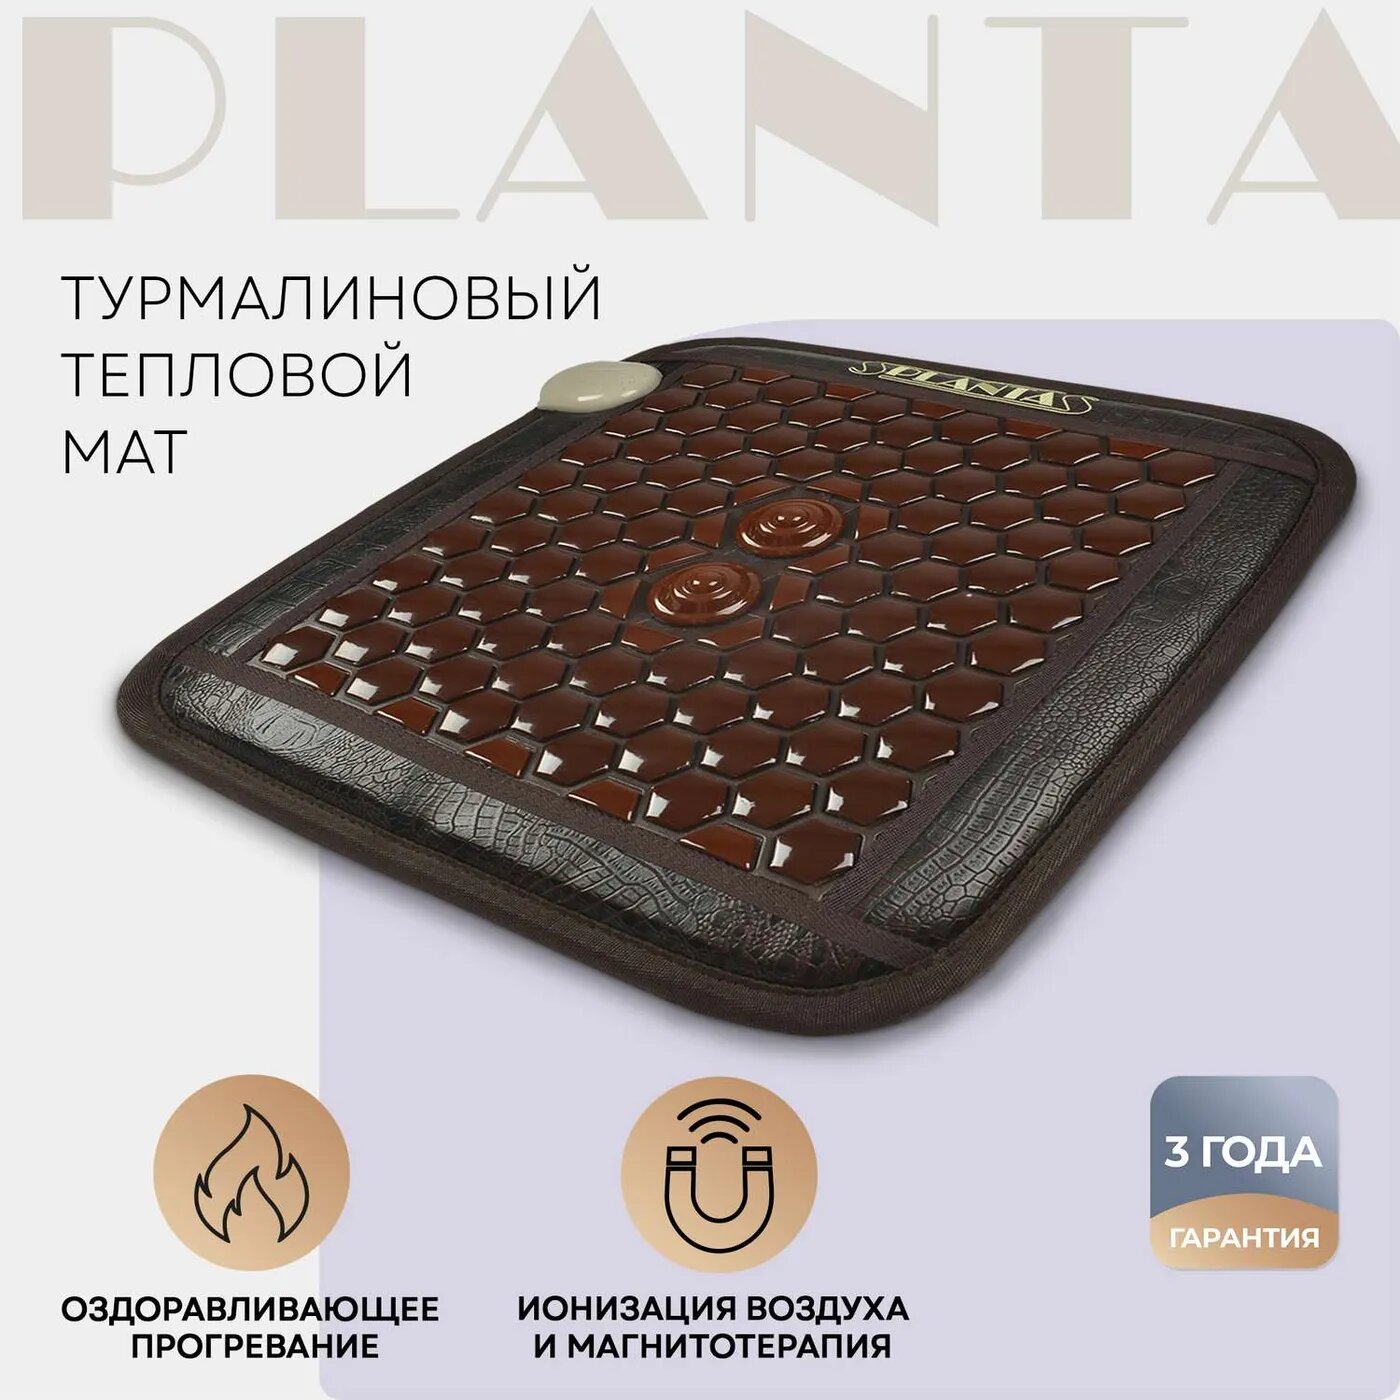 Турмалиновый тепловой мат Planta PL-CANVAS1 102 камня нагрев до 70 градусов